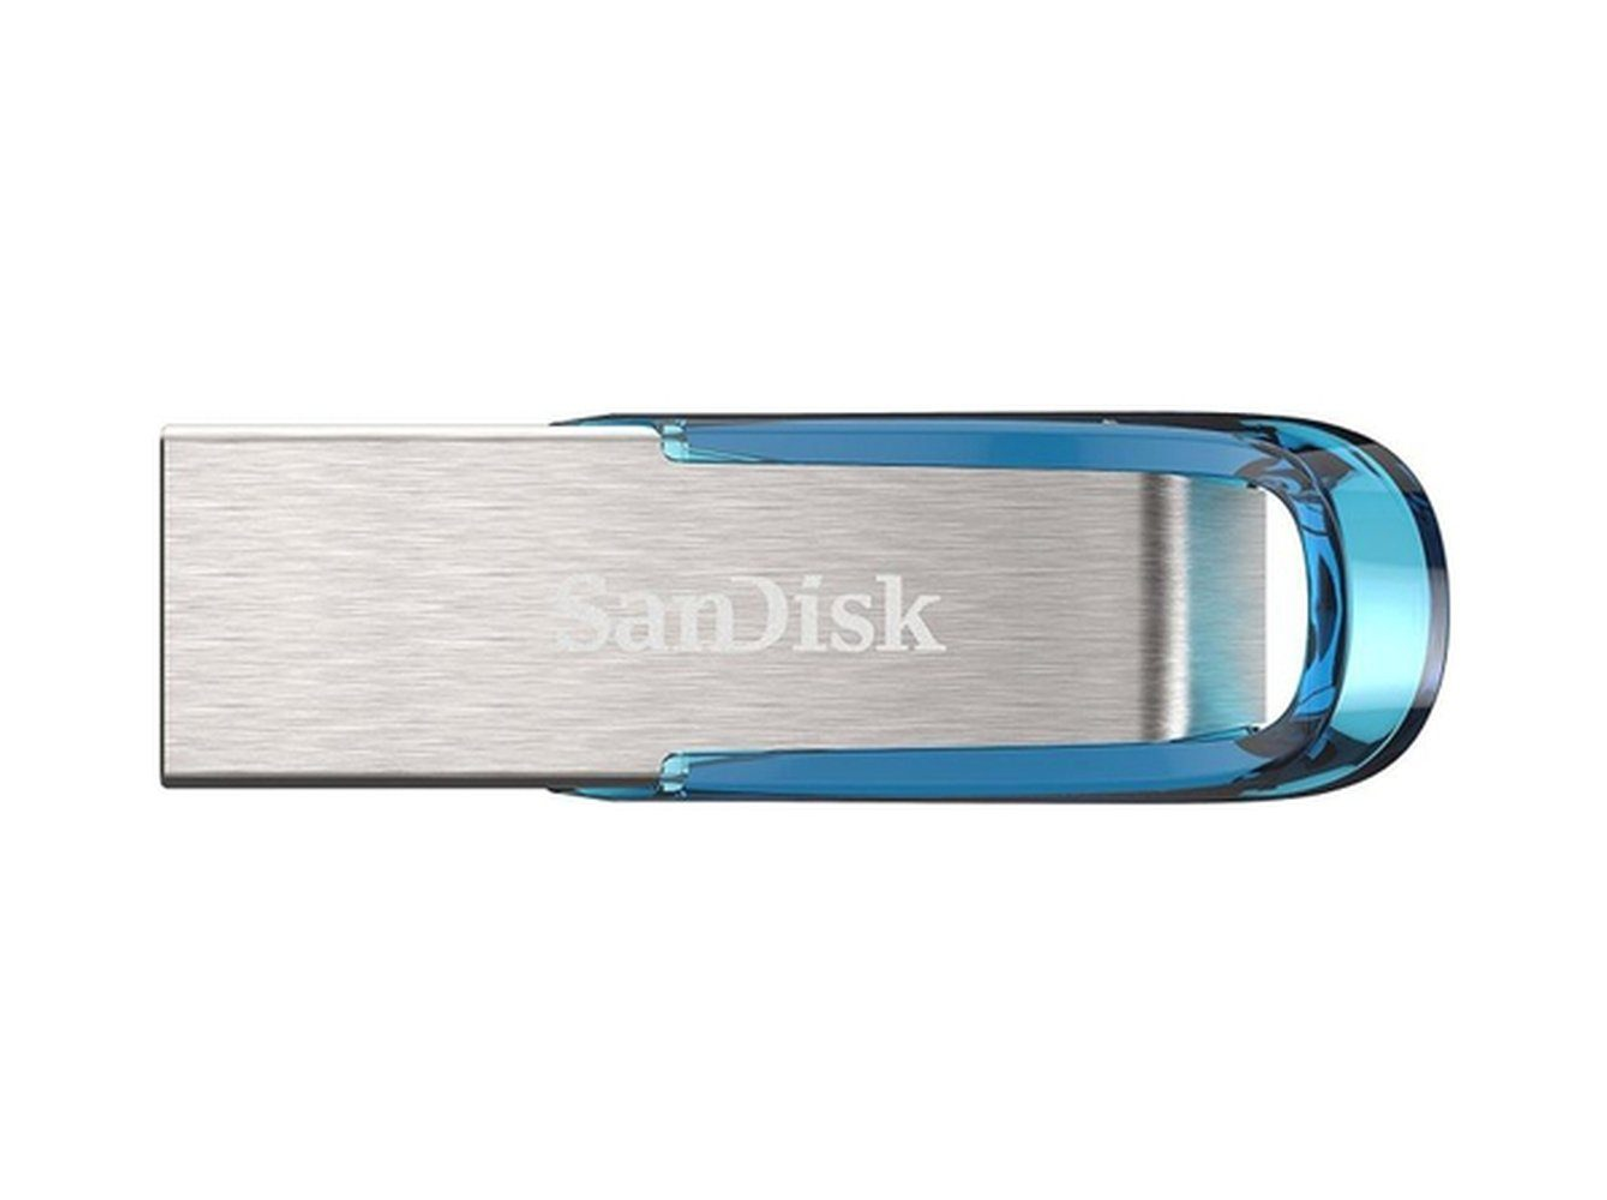 SANDISK SDCZ73-064G-G46B USB-Flash-Laufwerk (Silber und GB) Blau, 64